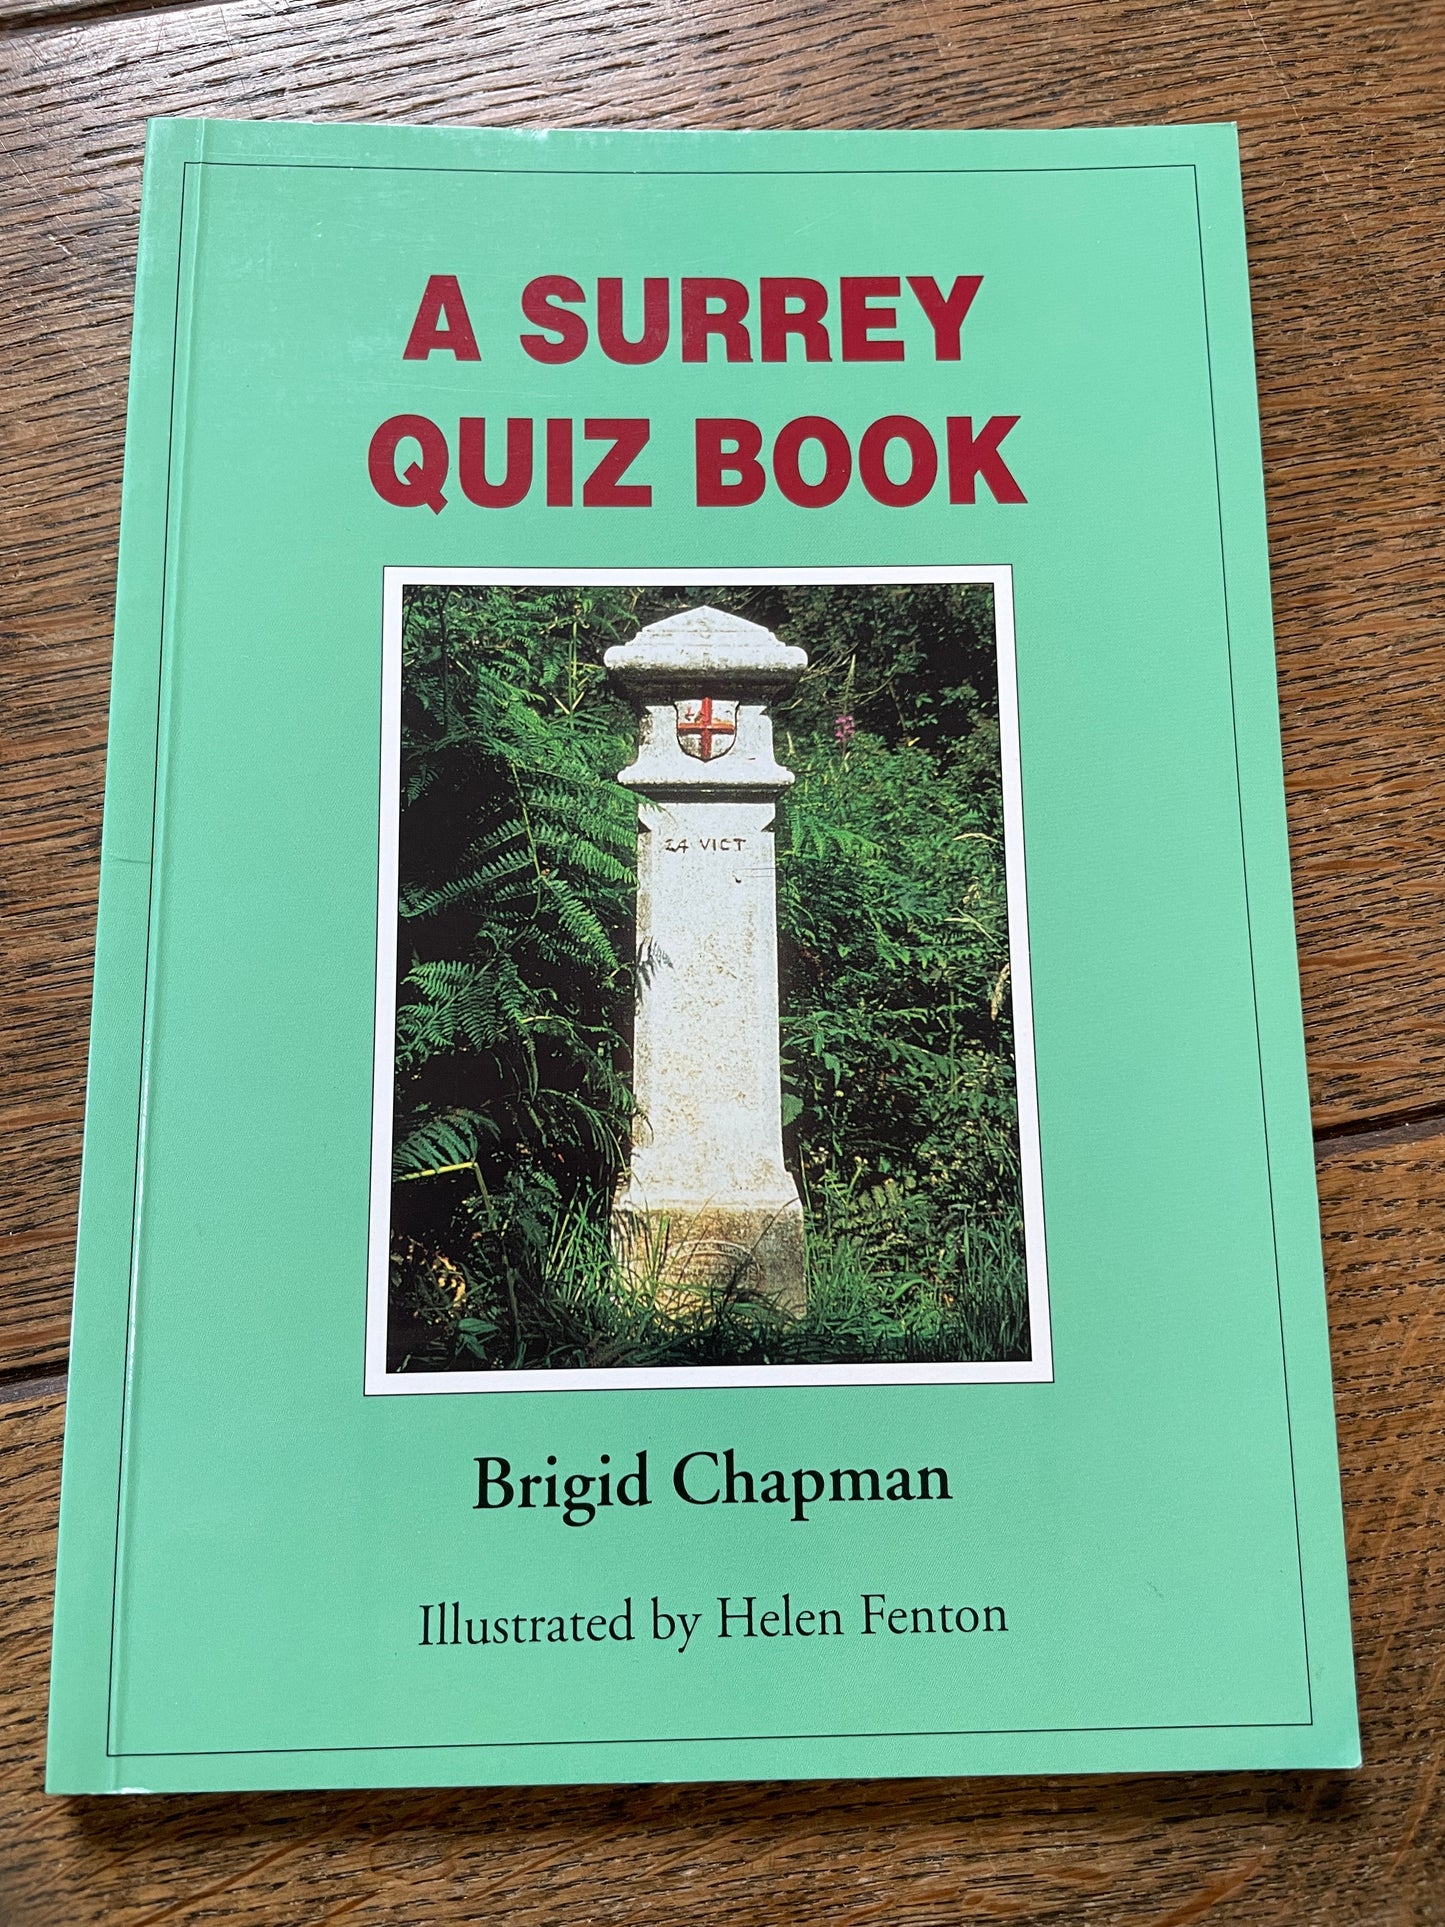 A Surrey Quiz Book by Brigid Chapman